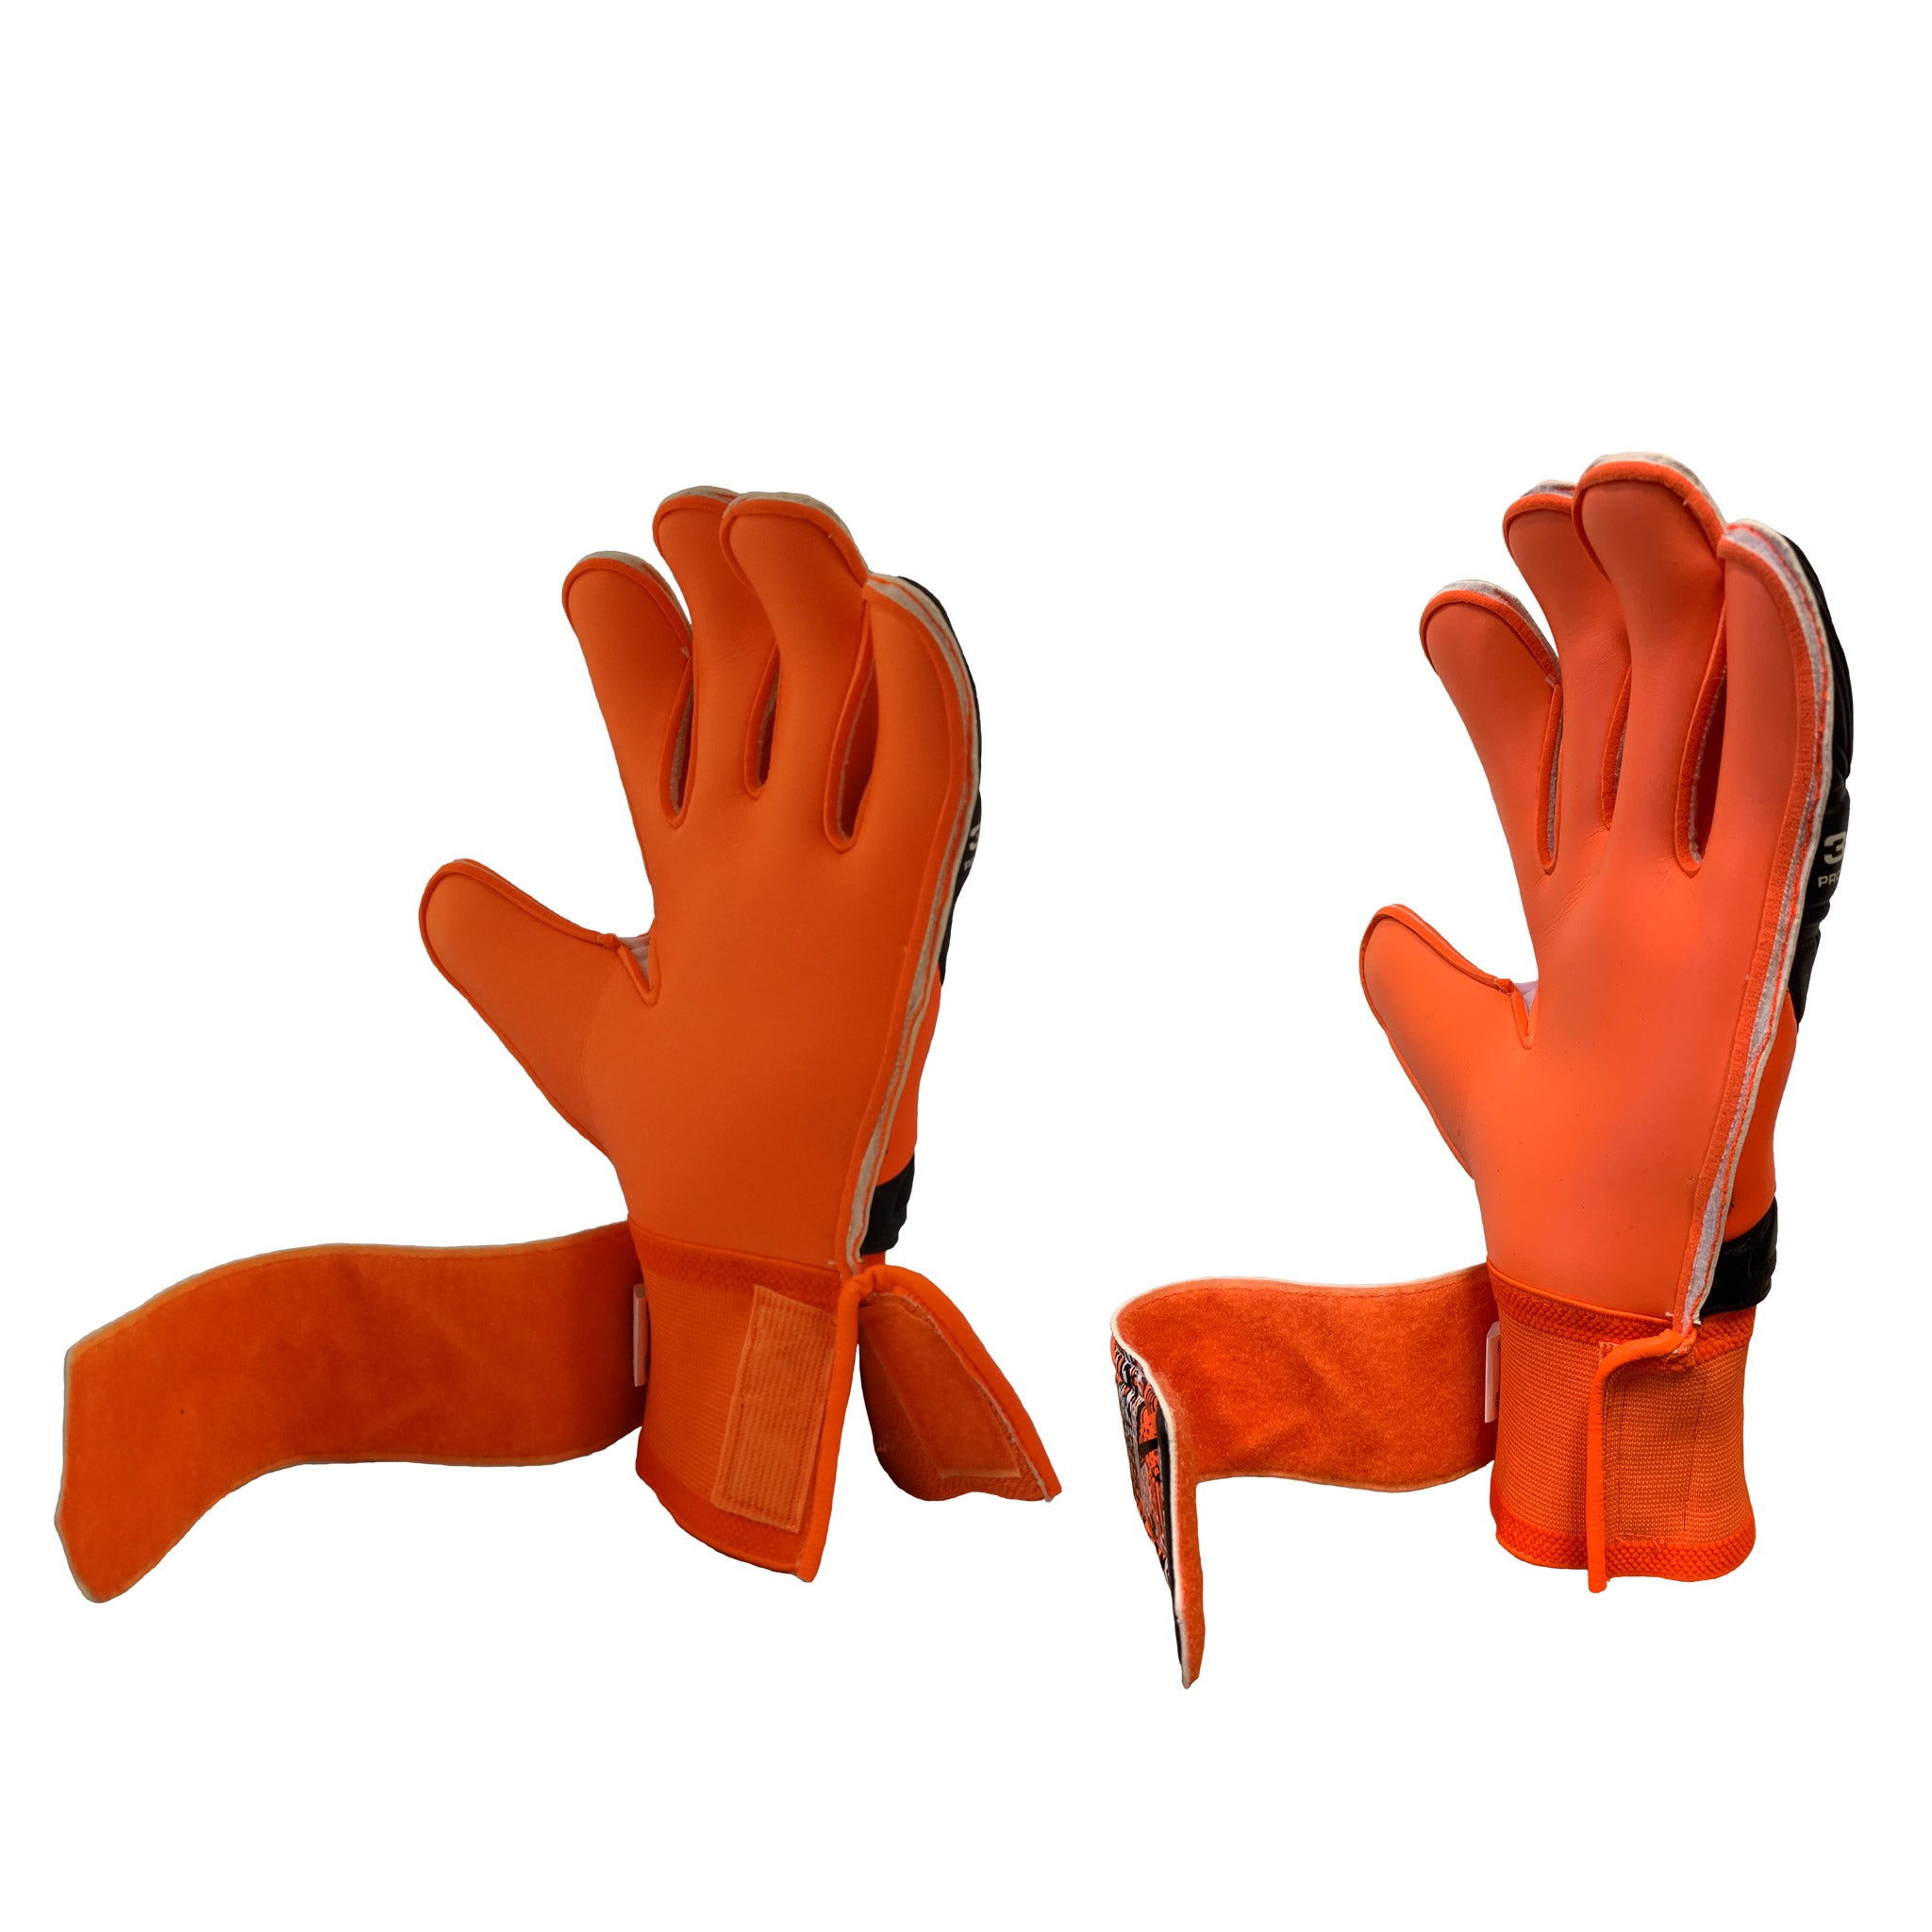 Orange and black goalkeeper glove #color_orange/black